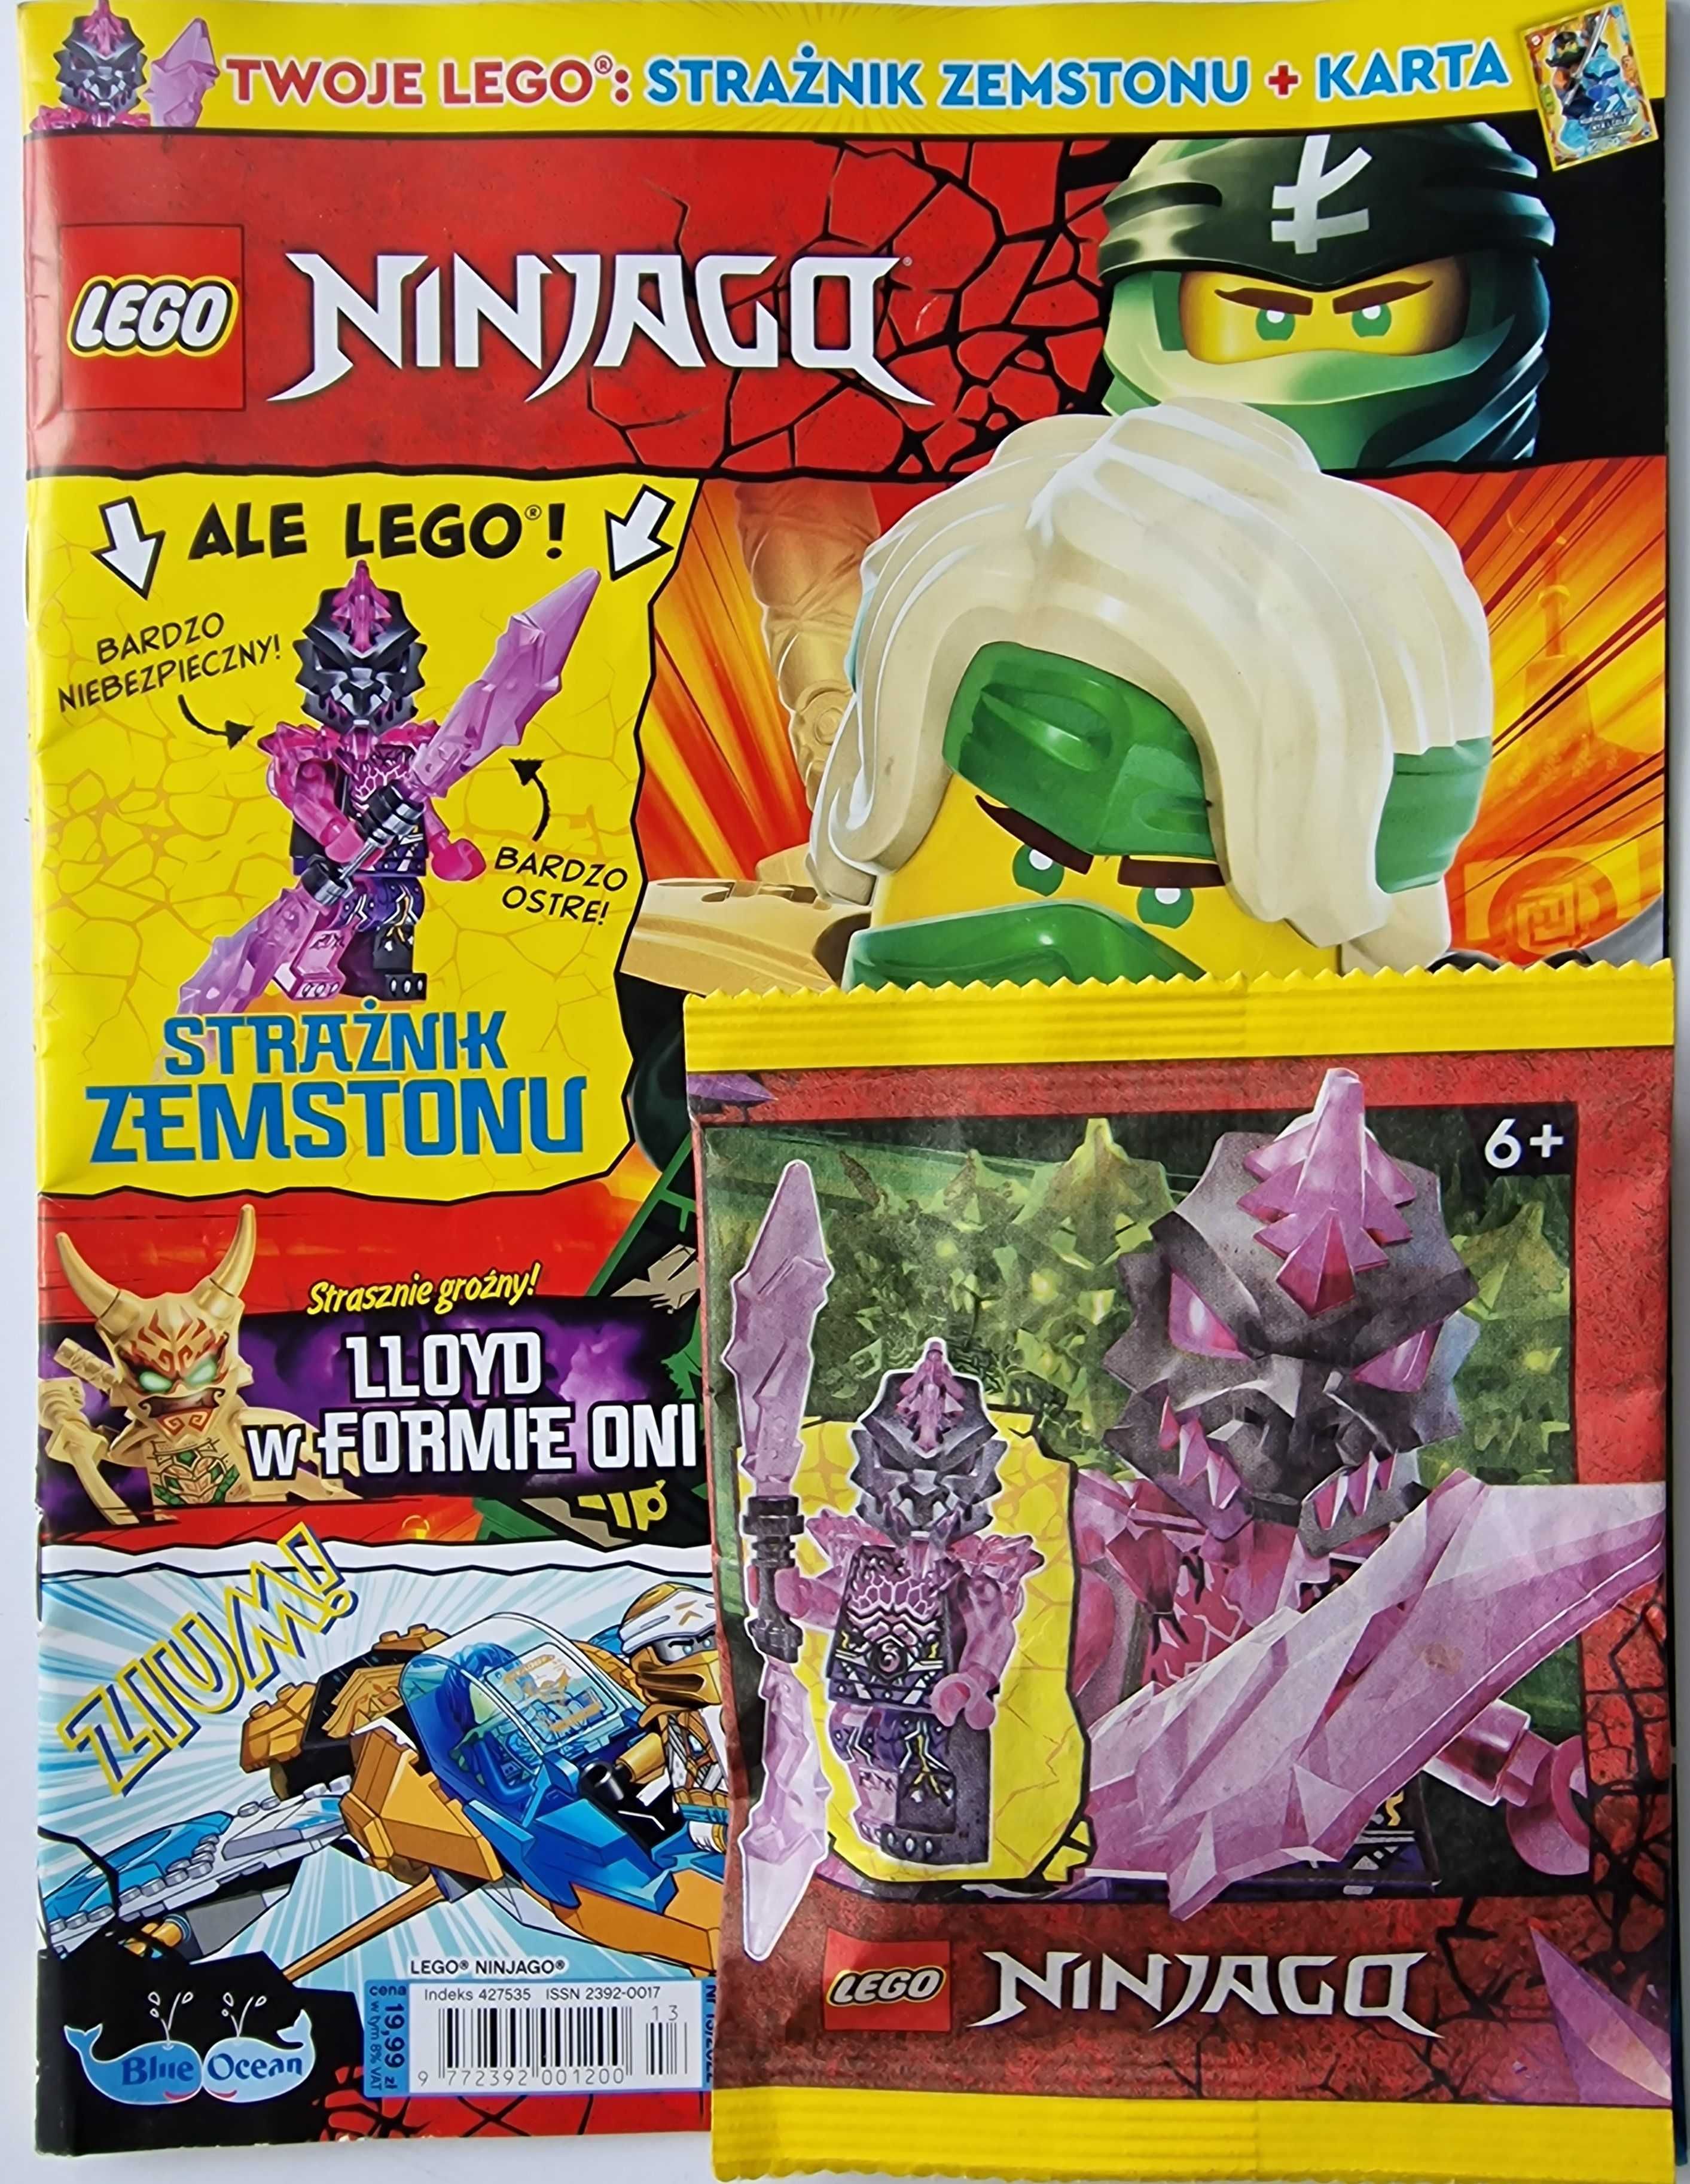 2 X Lego 892302  Ninjago Złoty smok JAY njo 755+Strażnik Zemstonu